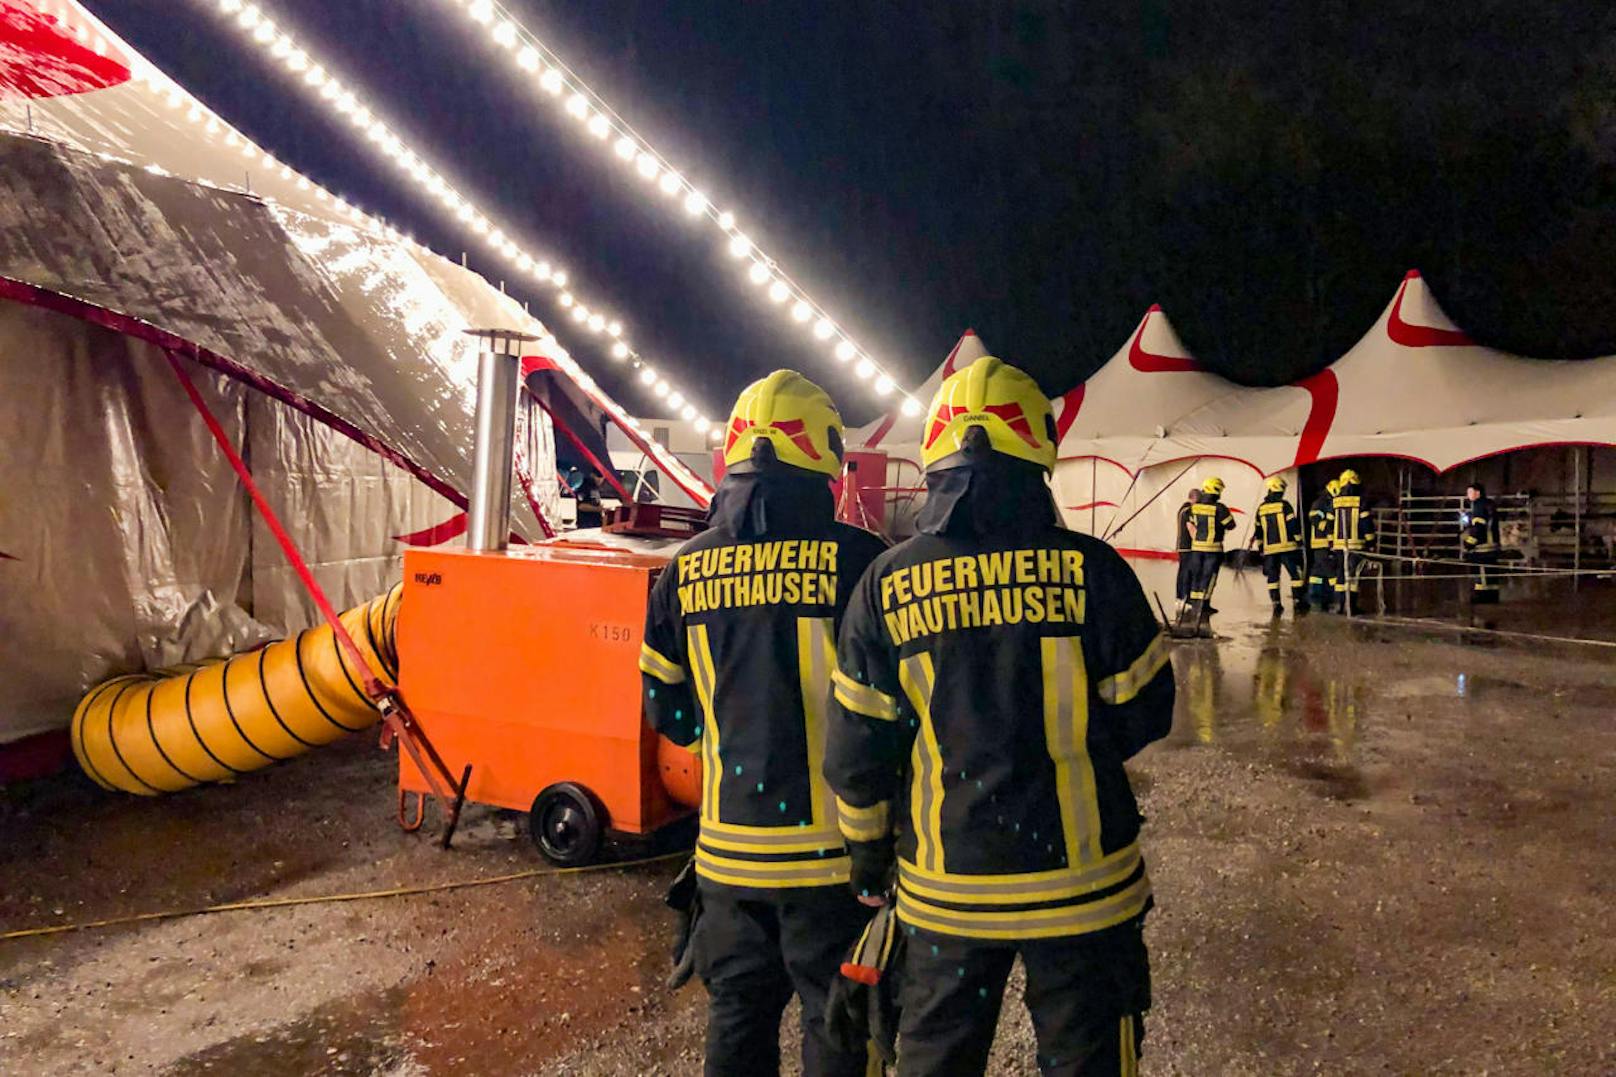 Die Feuerwehr Mauthausen mussten am 21. Dezember zu einem nicht ganz alltäglichen Einsatz ausrücken. Das Notfallstichwort lautete: "Zirkustiere unter Wasser"